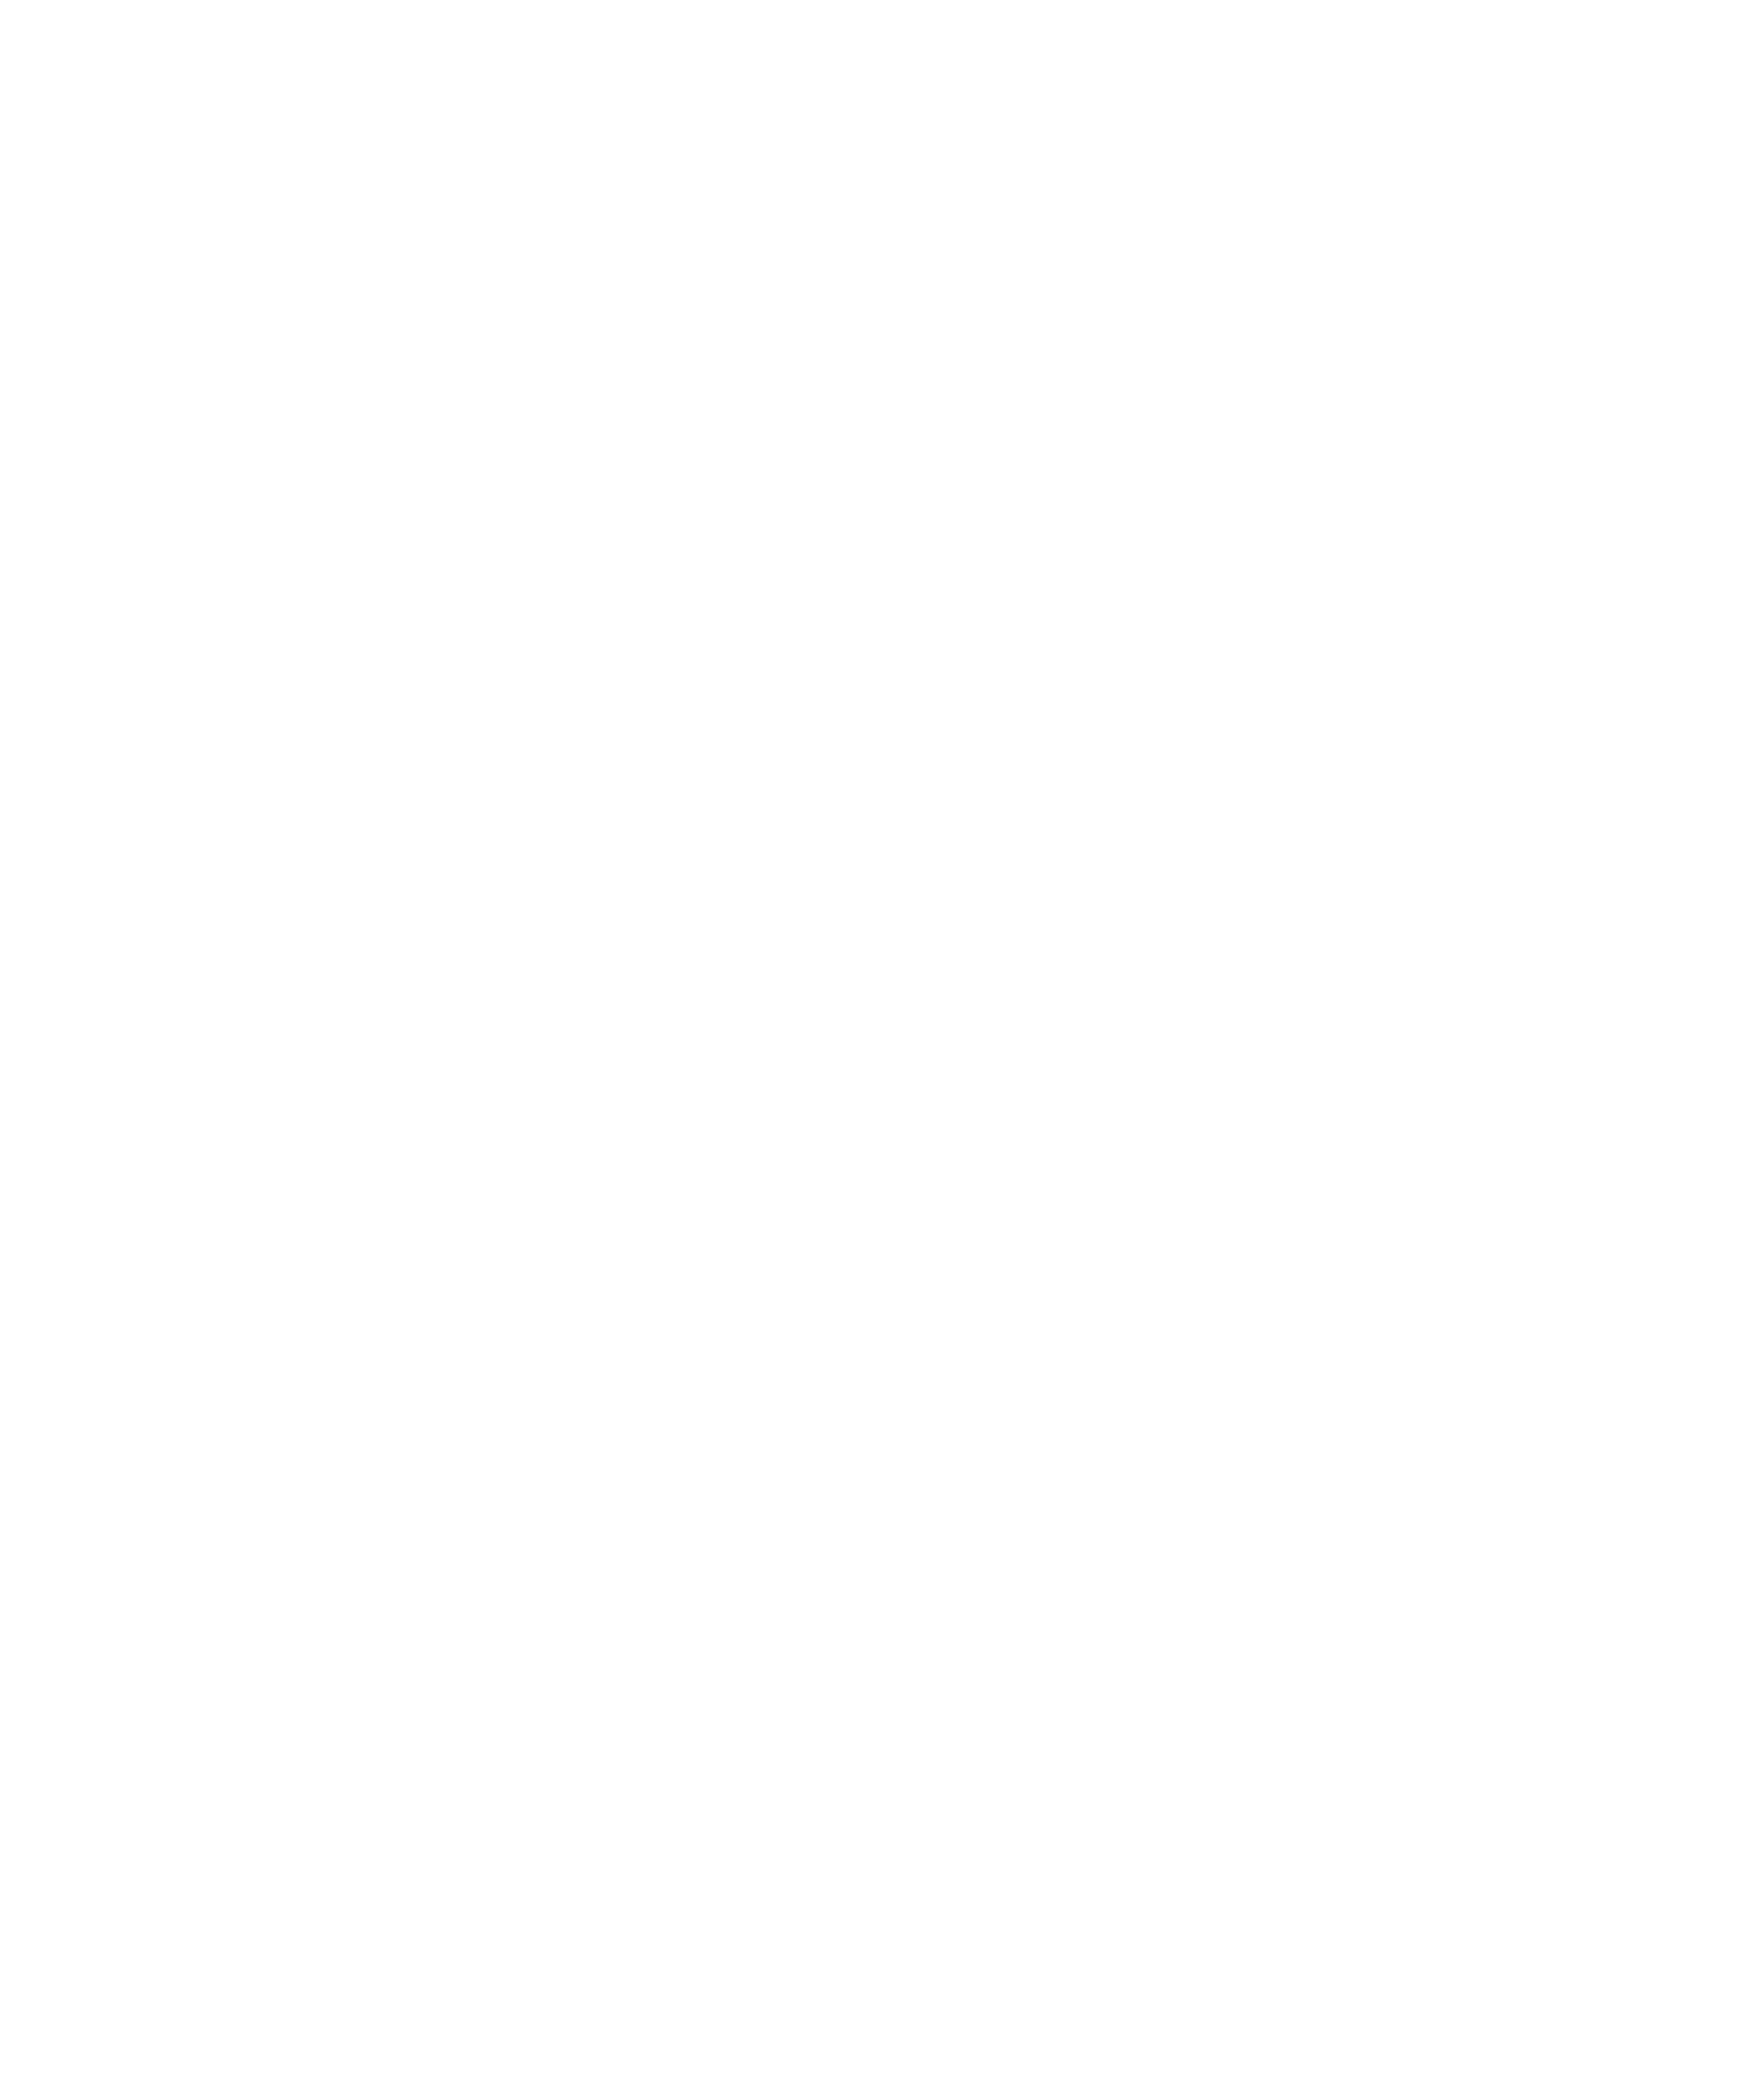 Ecovardis Silver 2022